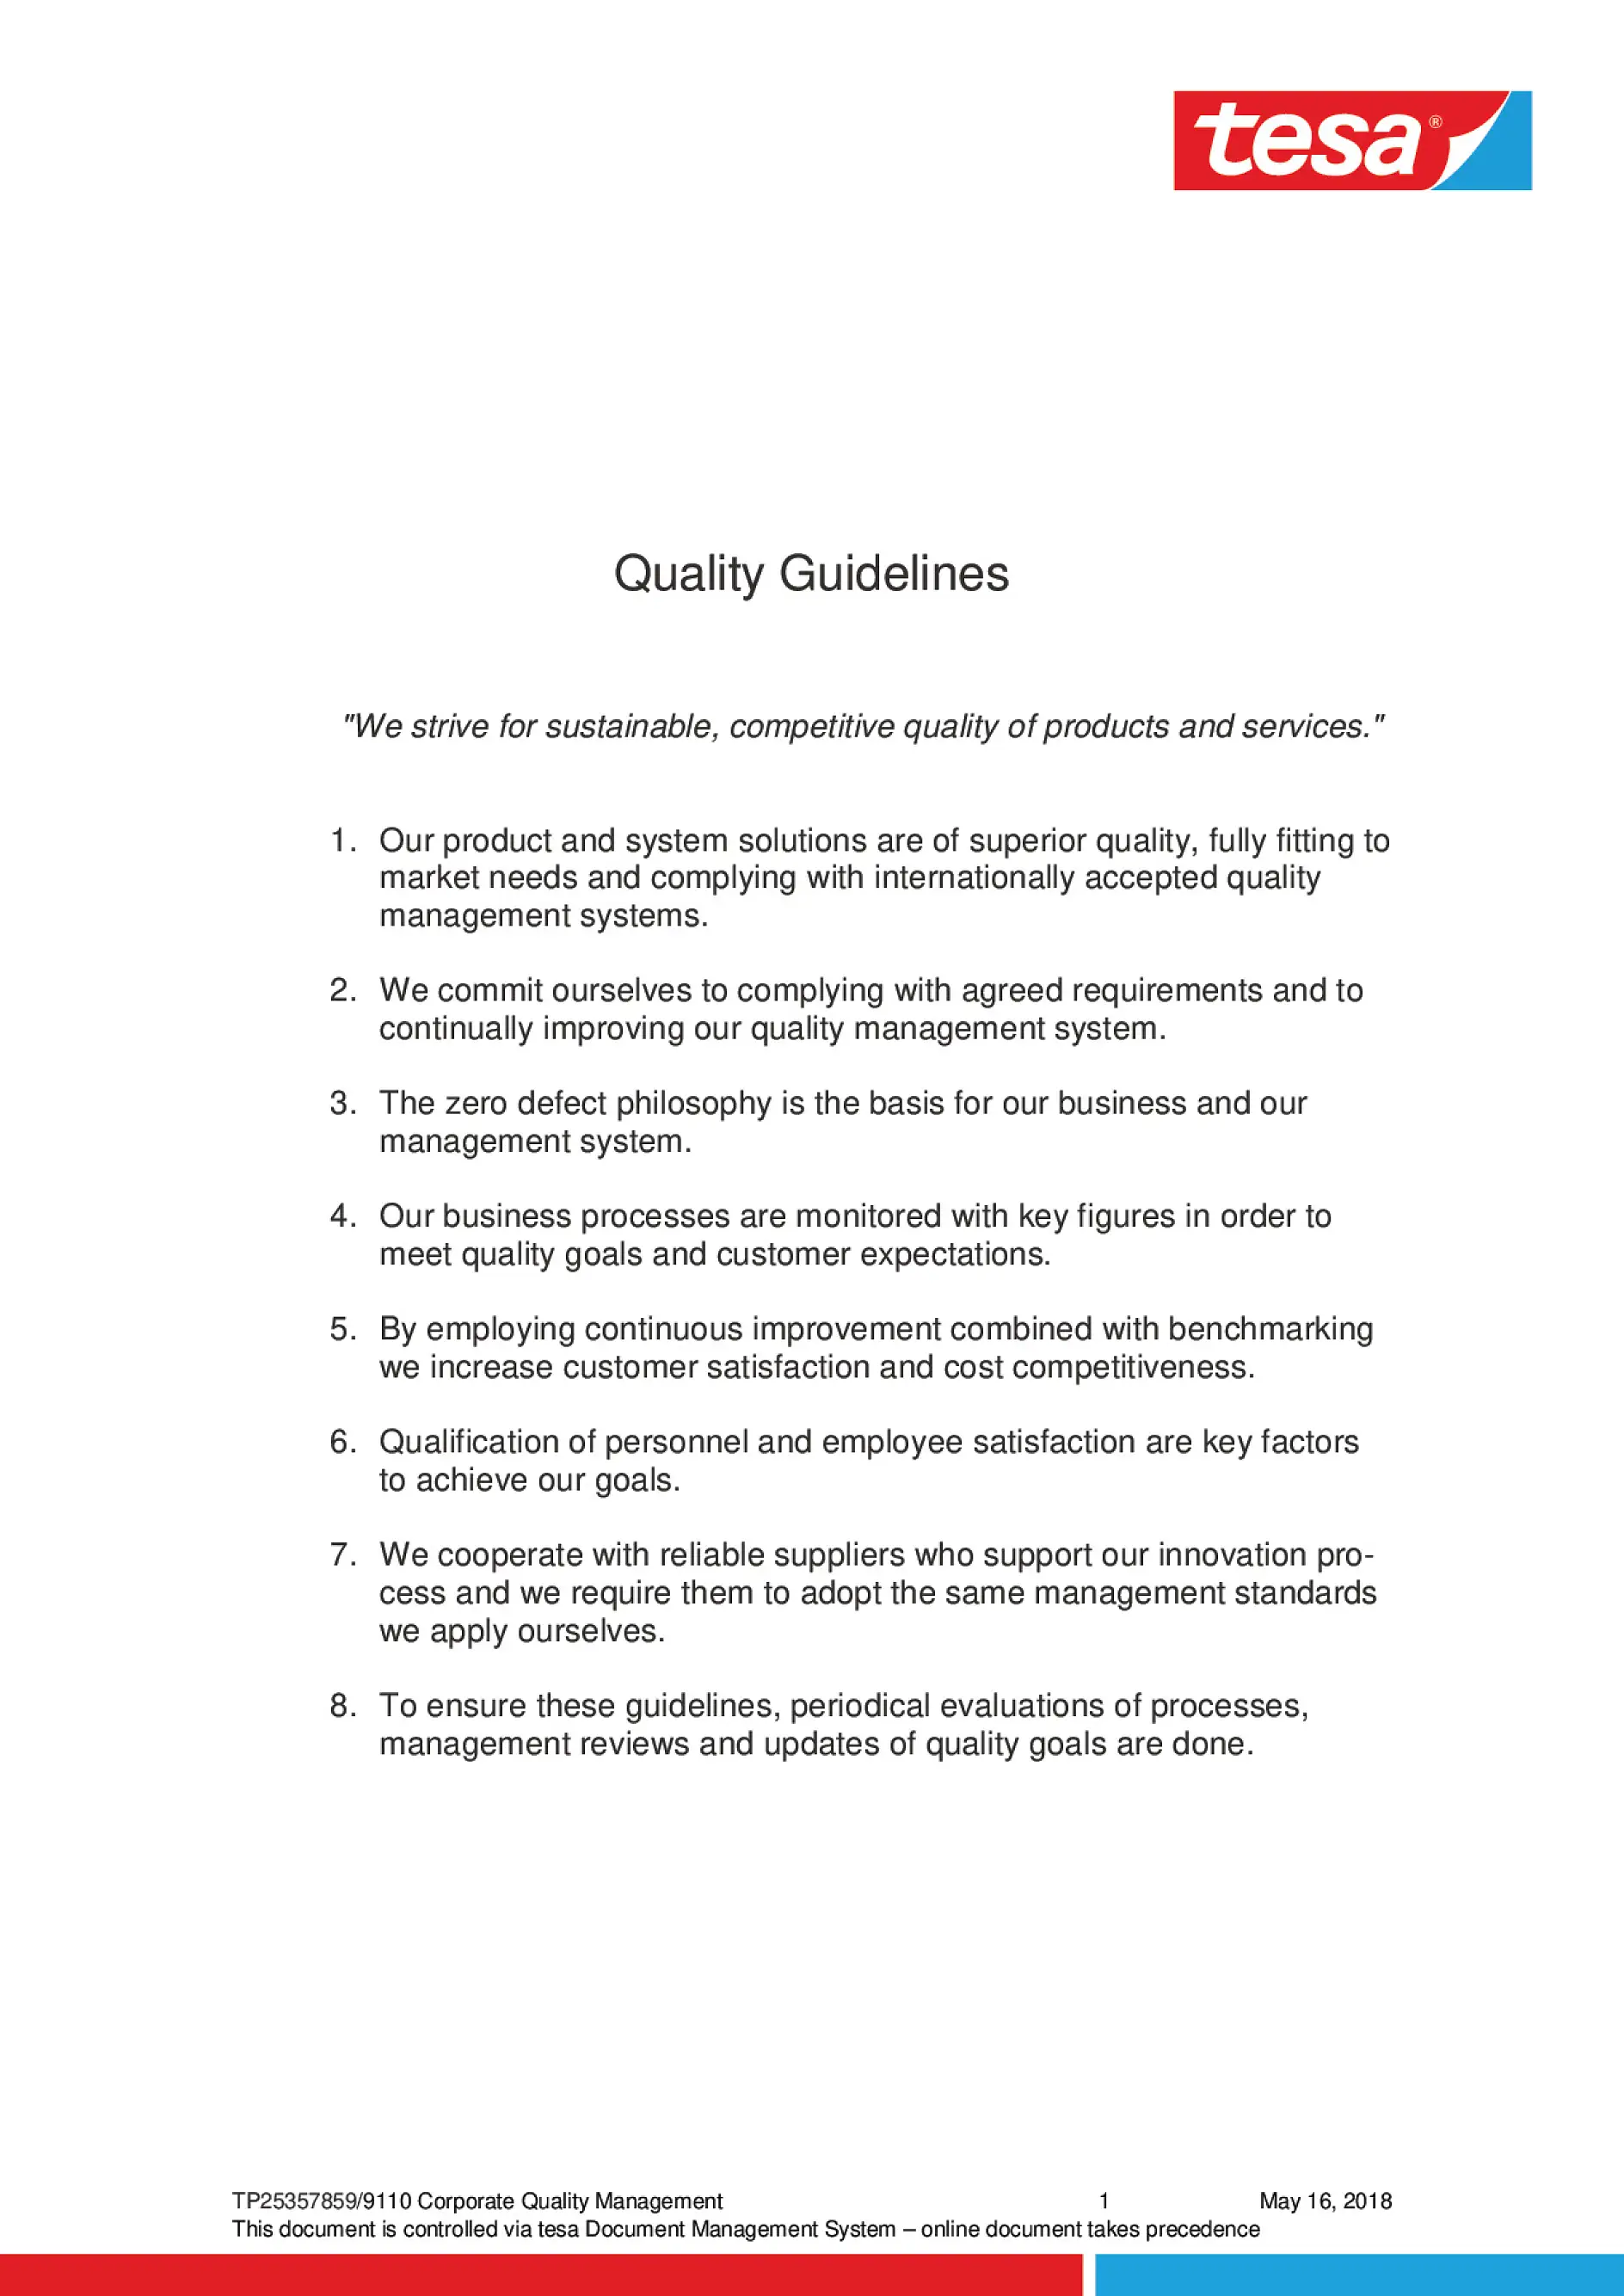 kwaliteitsrichtlijnen (1)